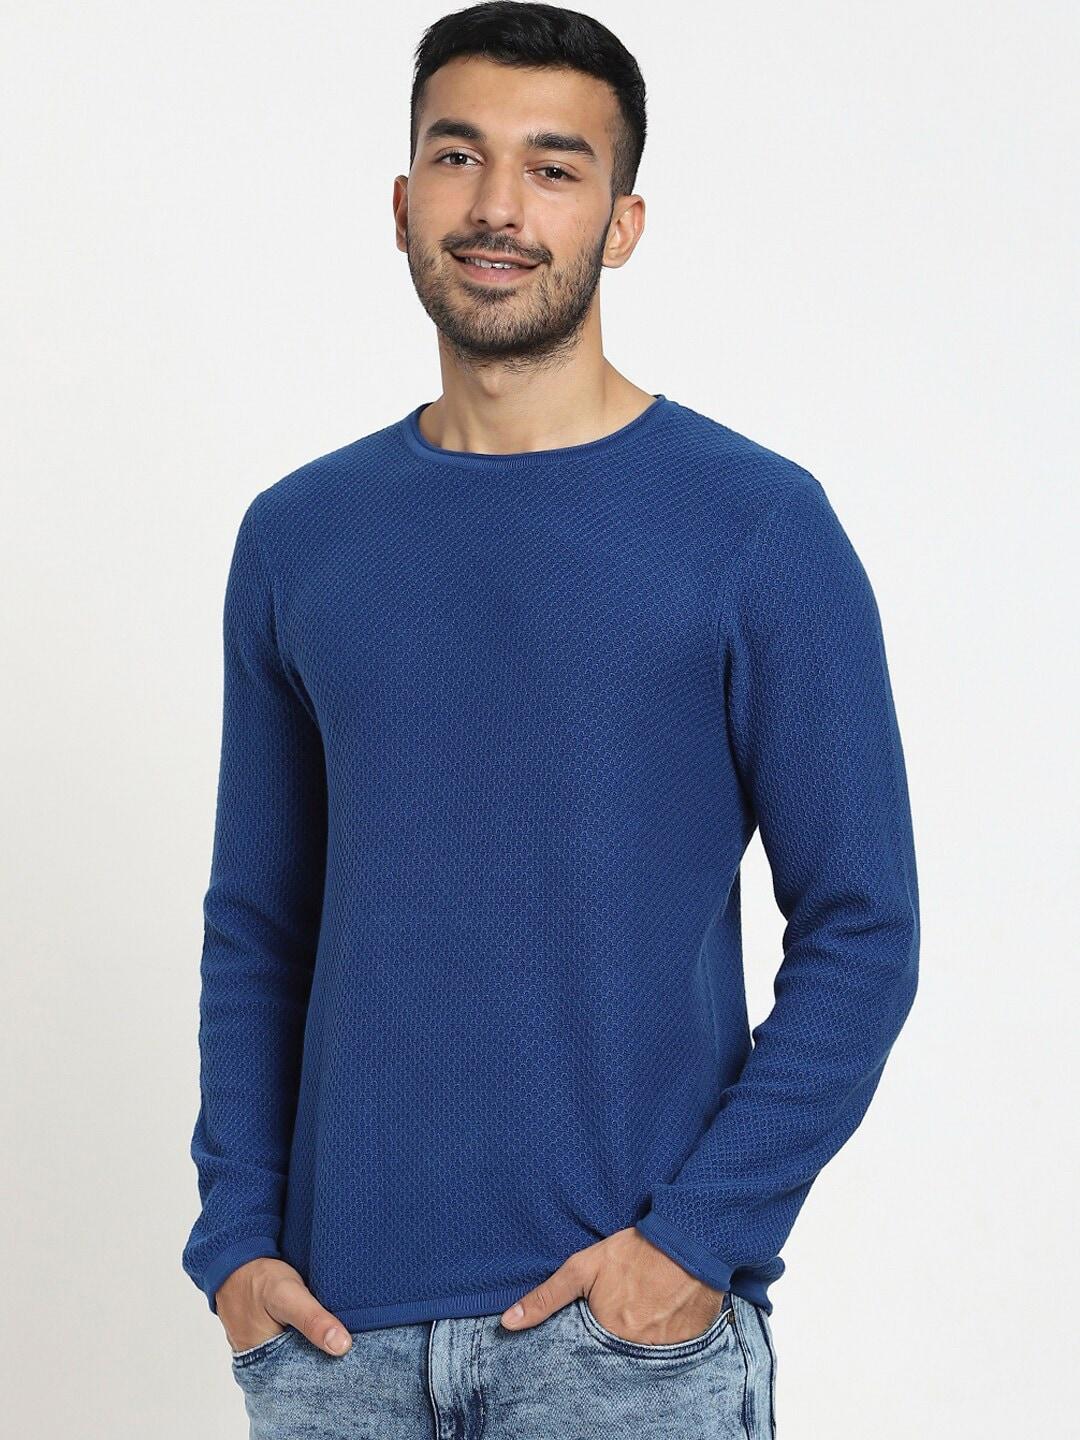 bewakoof-men-blue-quartz-flat-knit-sweater